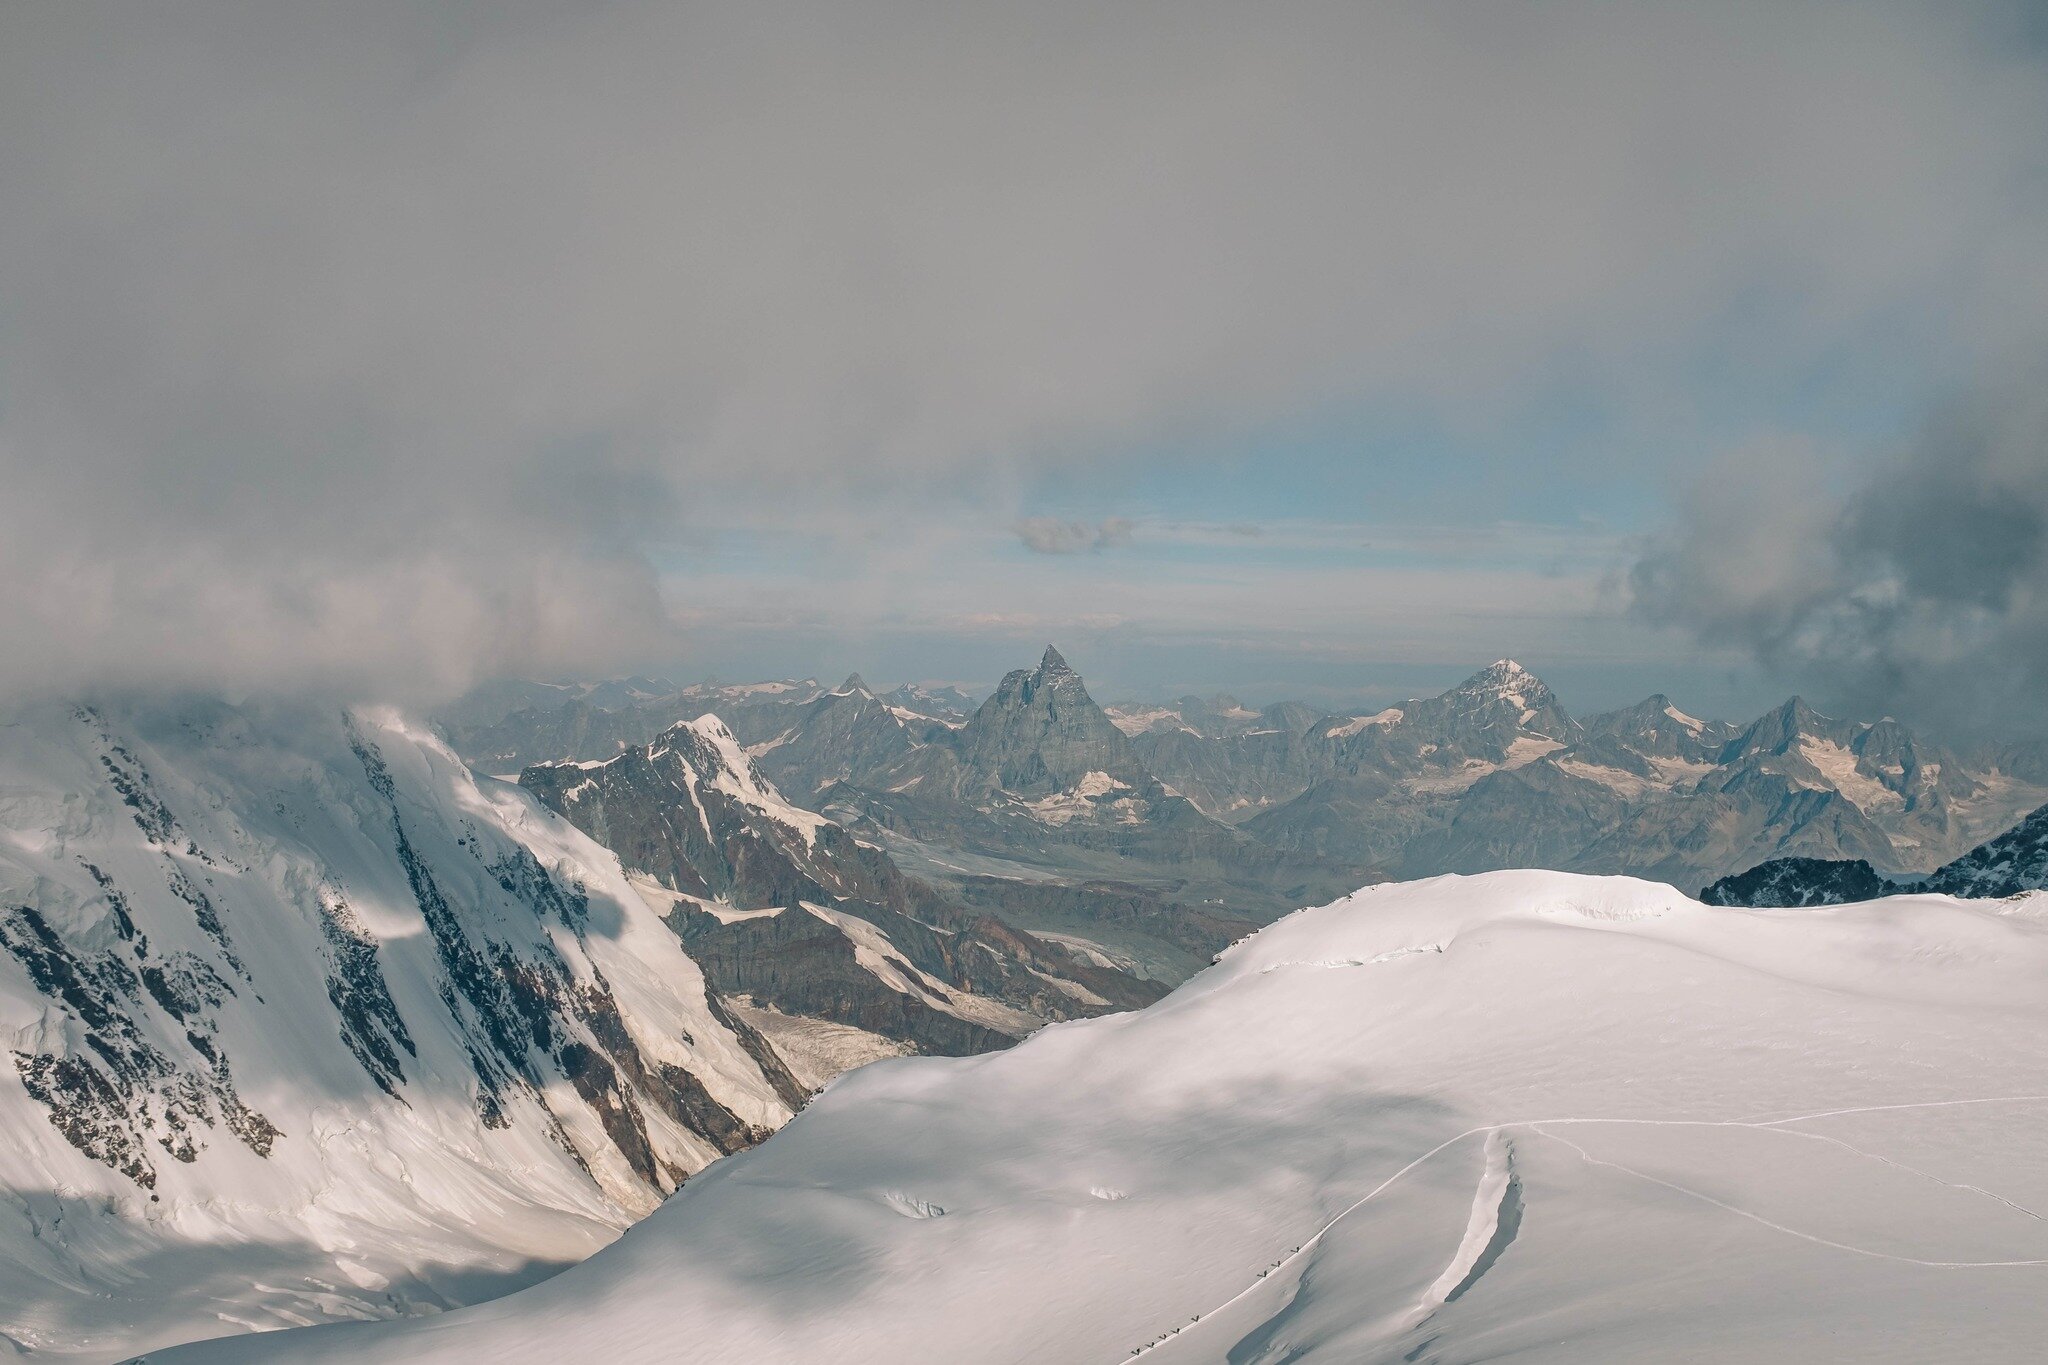 Il Monte Rosa è un massiccio montuoso nella parte orientale delle Alpi Pennine. Le Alpi si sono formate decine di milioni di anni fa, quando la placca tettonica africana si è lentamente scontrata con quella europea. La collisione delle placche ha contribuito a chiudere la parte occidentale 